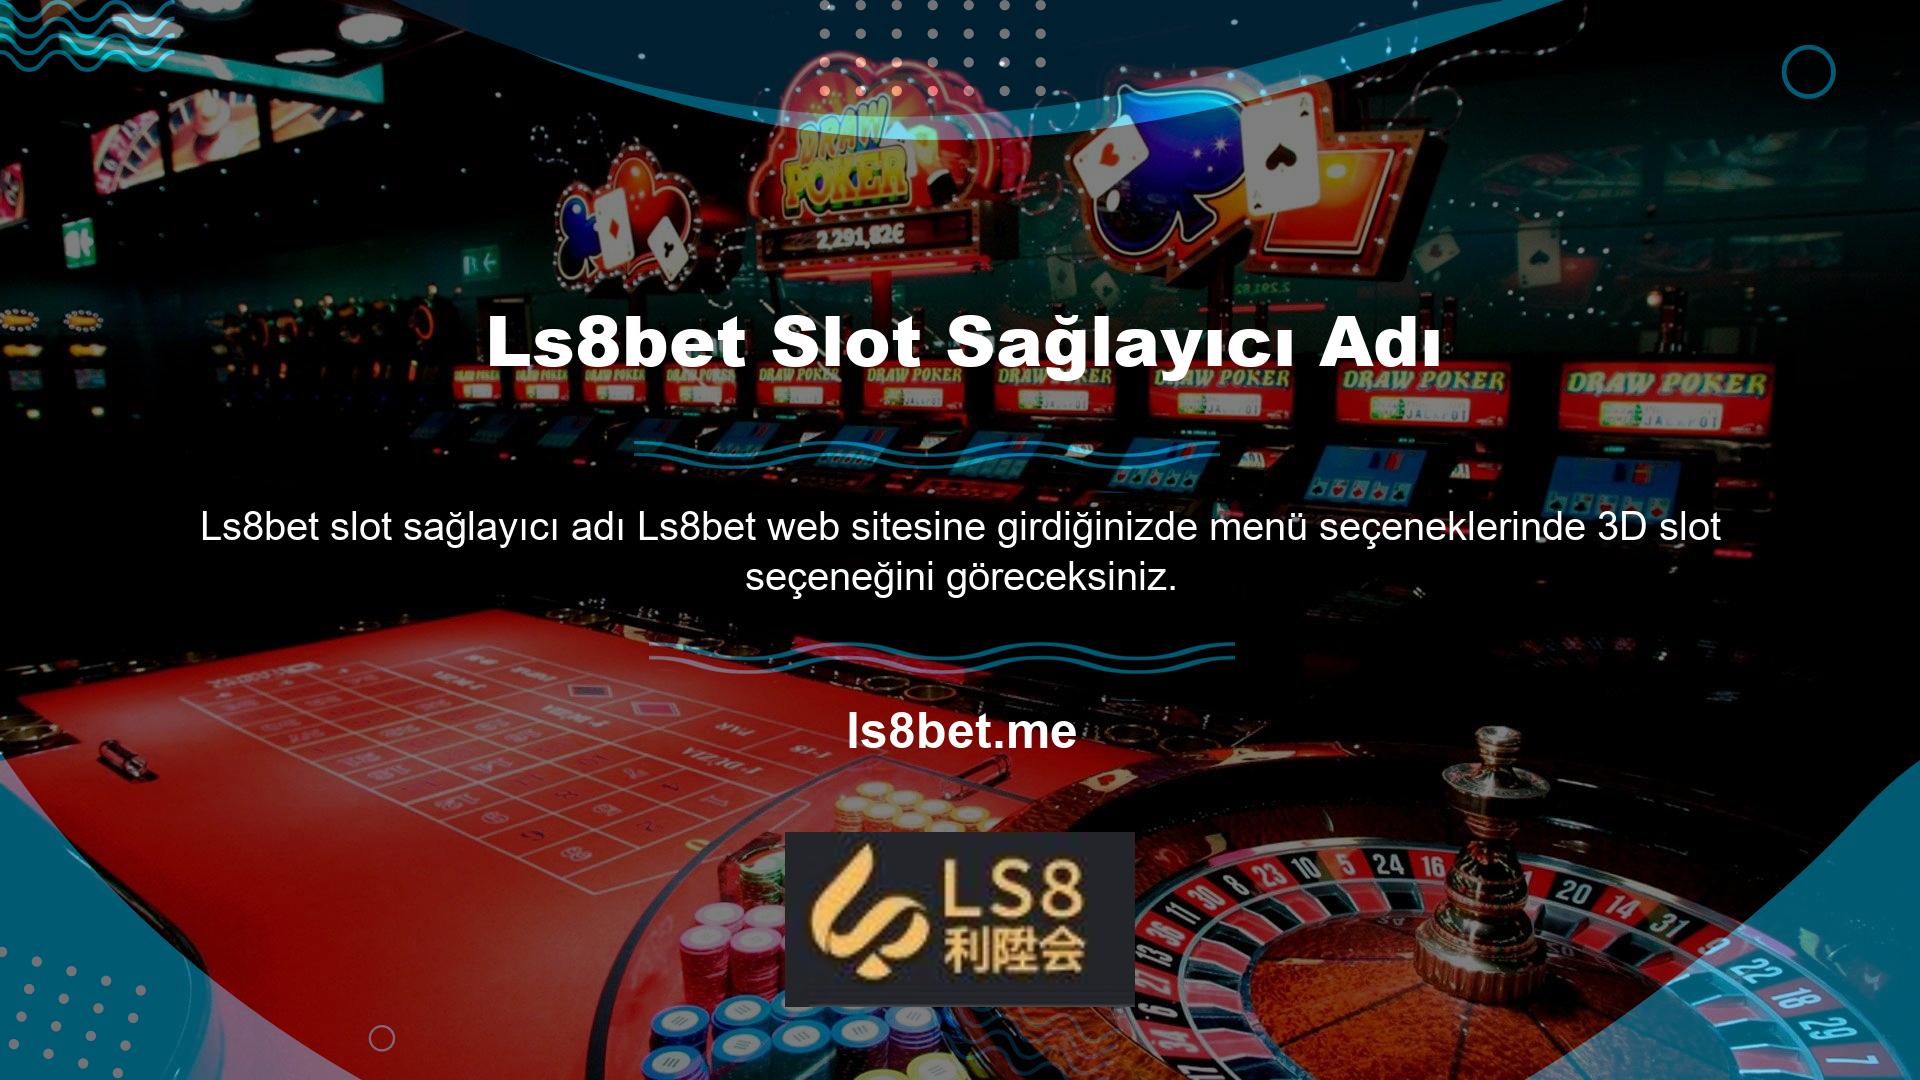 Bu seçeneğe tıklamak, Ls8bet web sitesinde sağlanan slot makinesi adlarını görüntüleyecektir